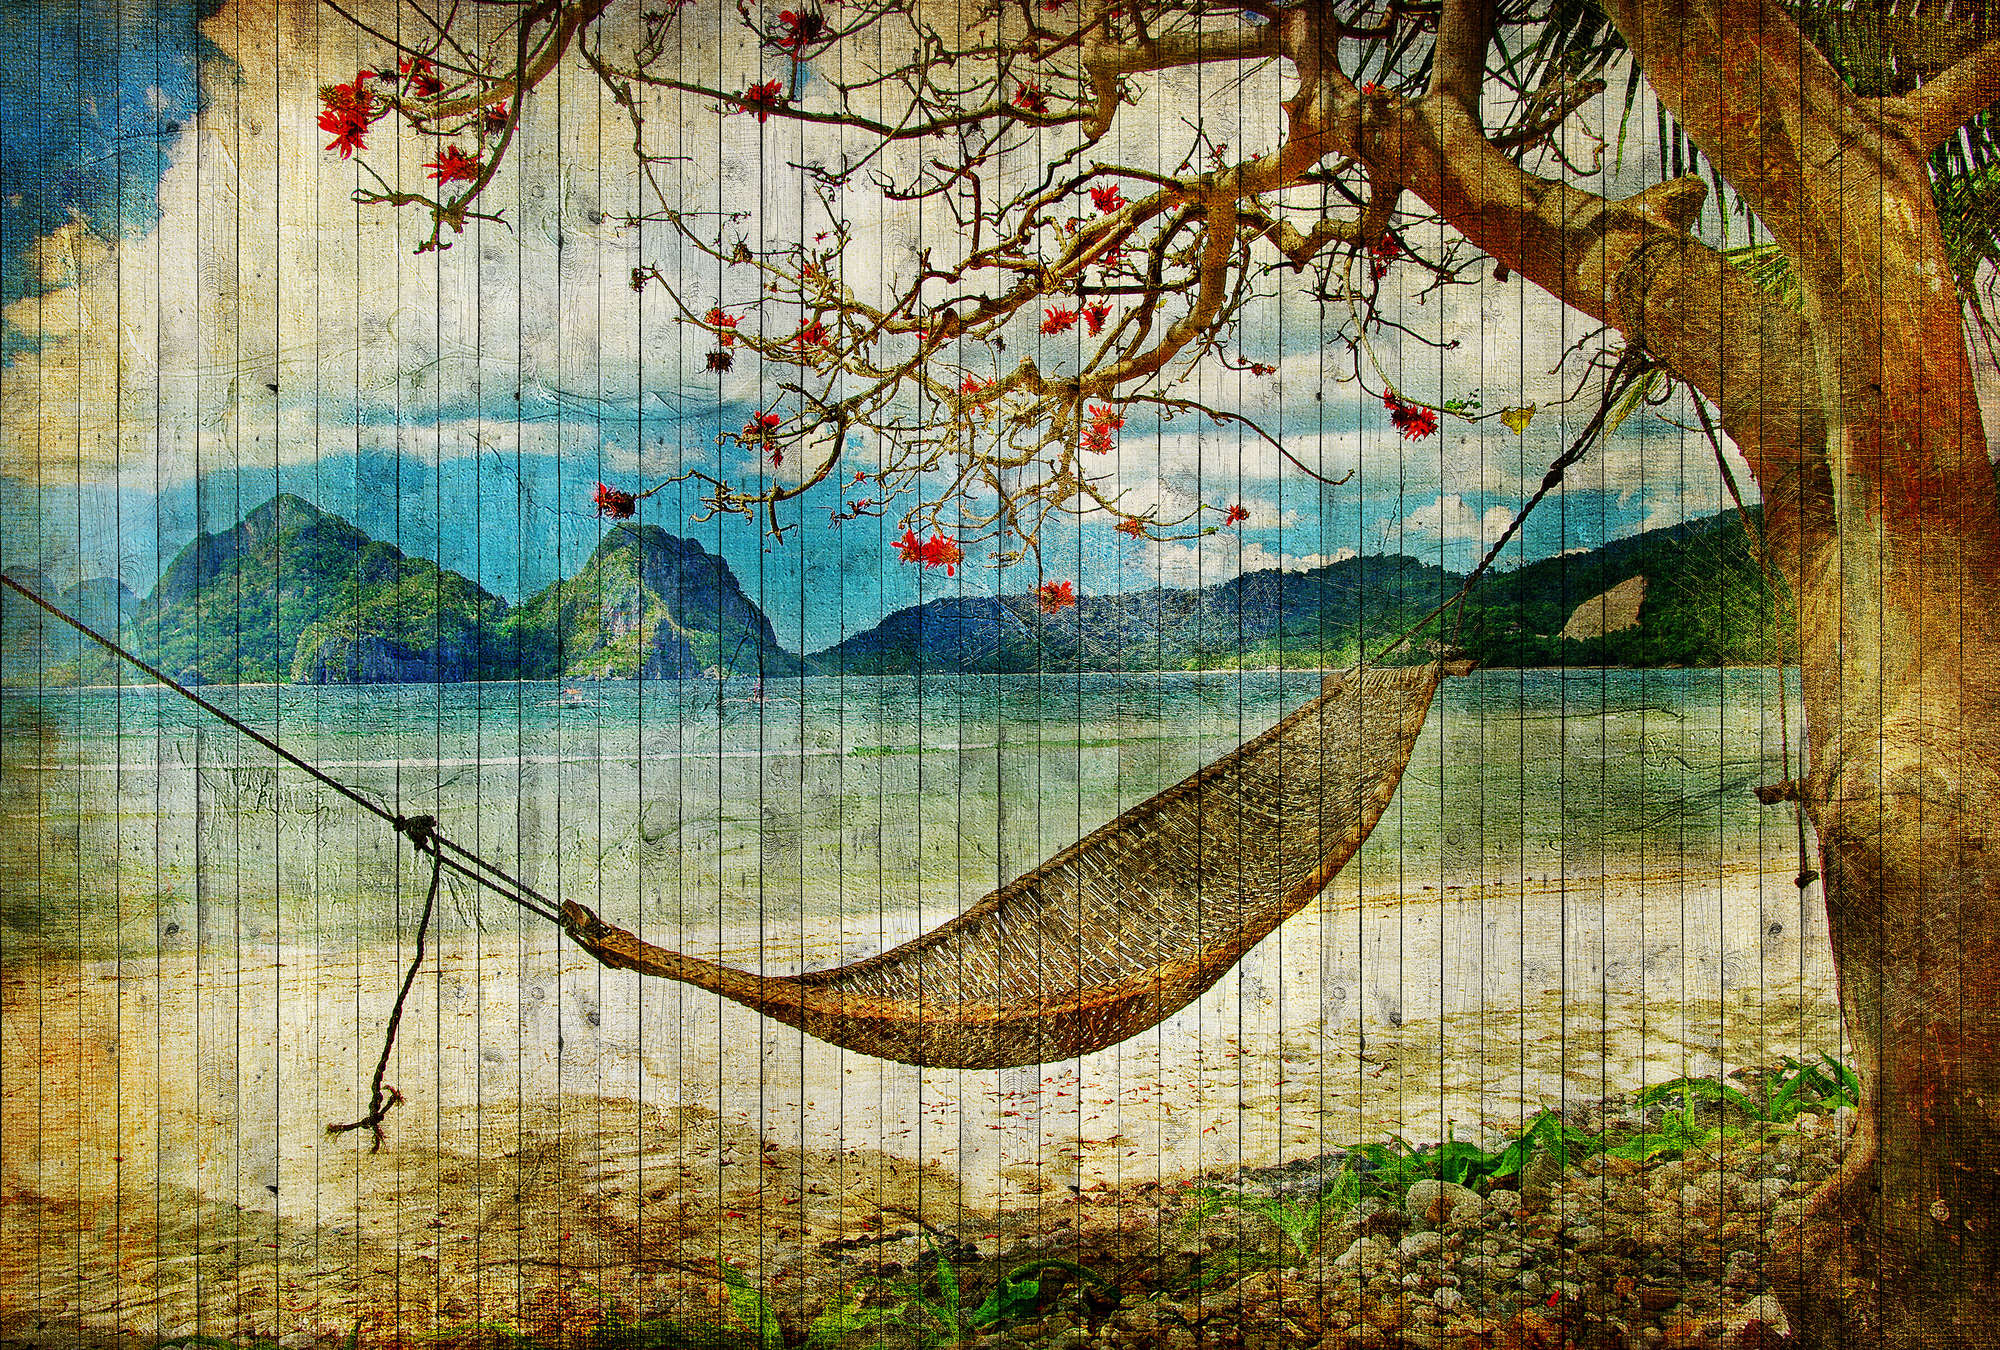             Tahiti 2 - Pannello murale in legno con amaca e spiaggia dei mari del sud - Beige, Blu | Pile liscio opaco
        